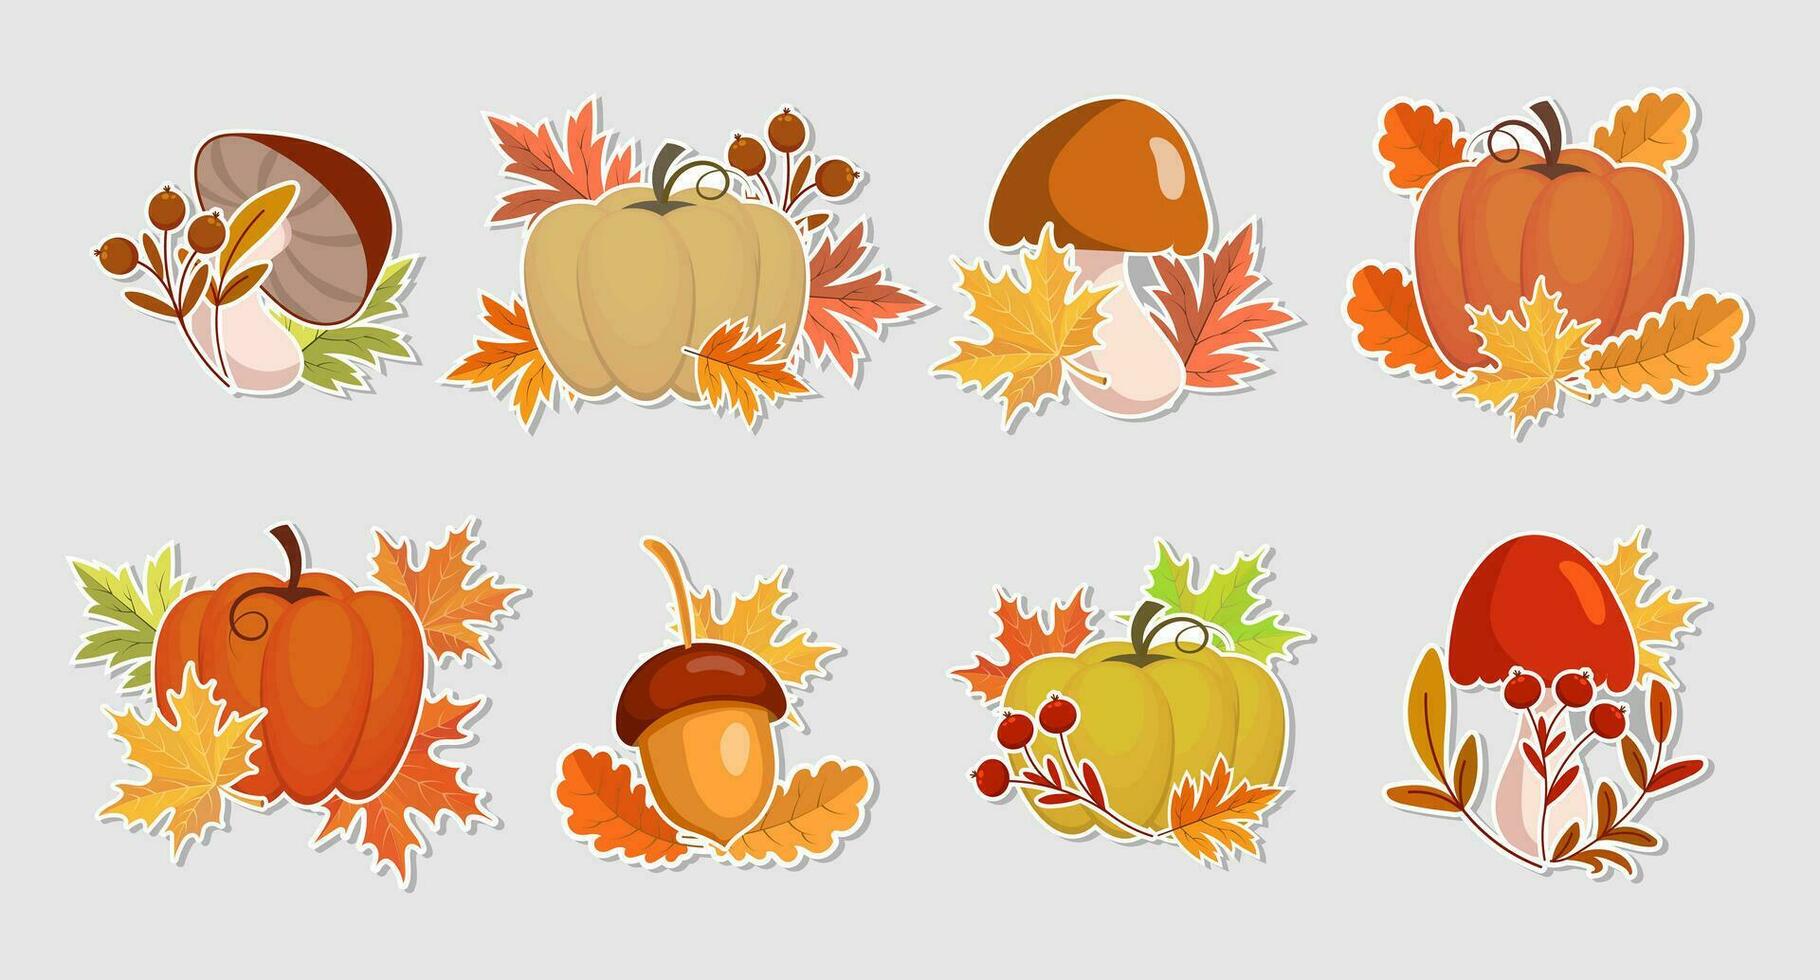 impostato di autunno adesivi, zucche, ghiande, funghi e autunno le foglie e sorbo. illustrazione, icone, modello, vettore